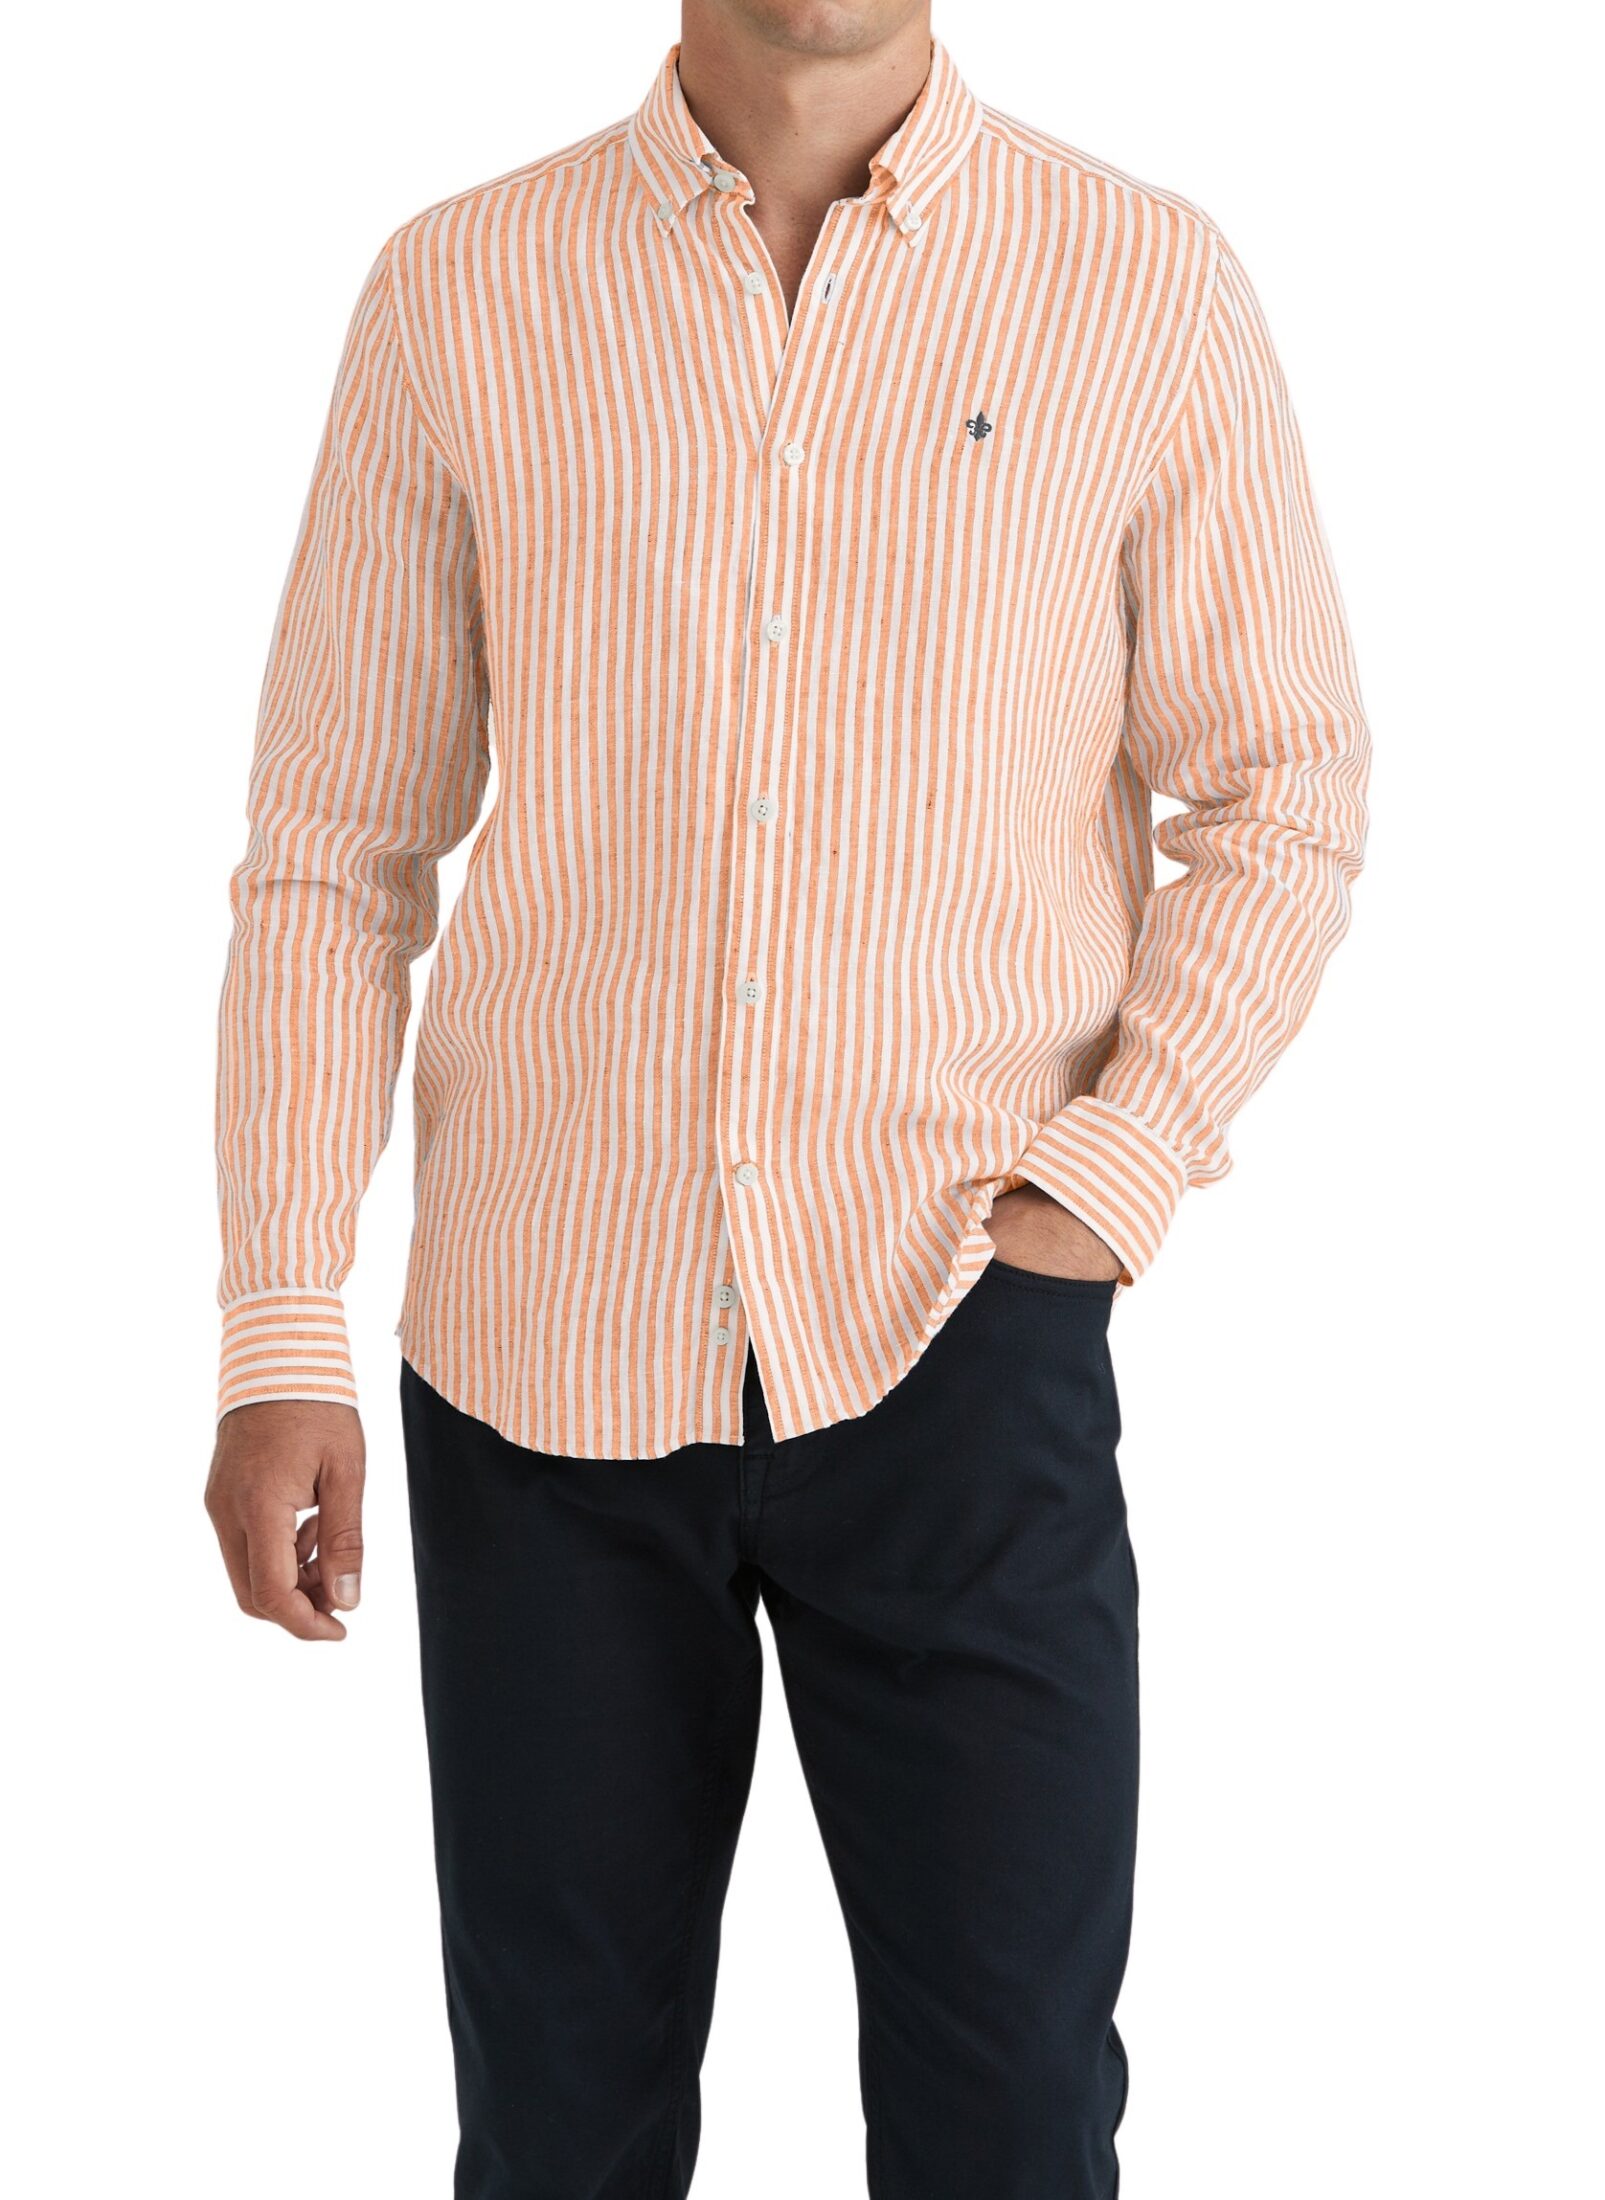 801676-douglas-linen-stripe-shirt-classic-fit-20-orange-1